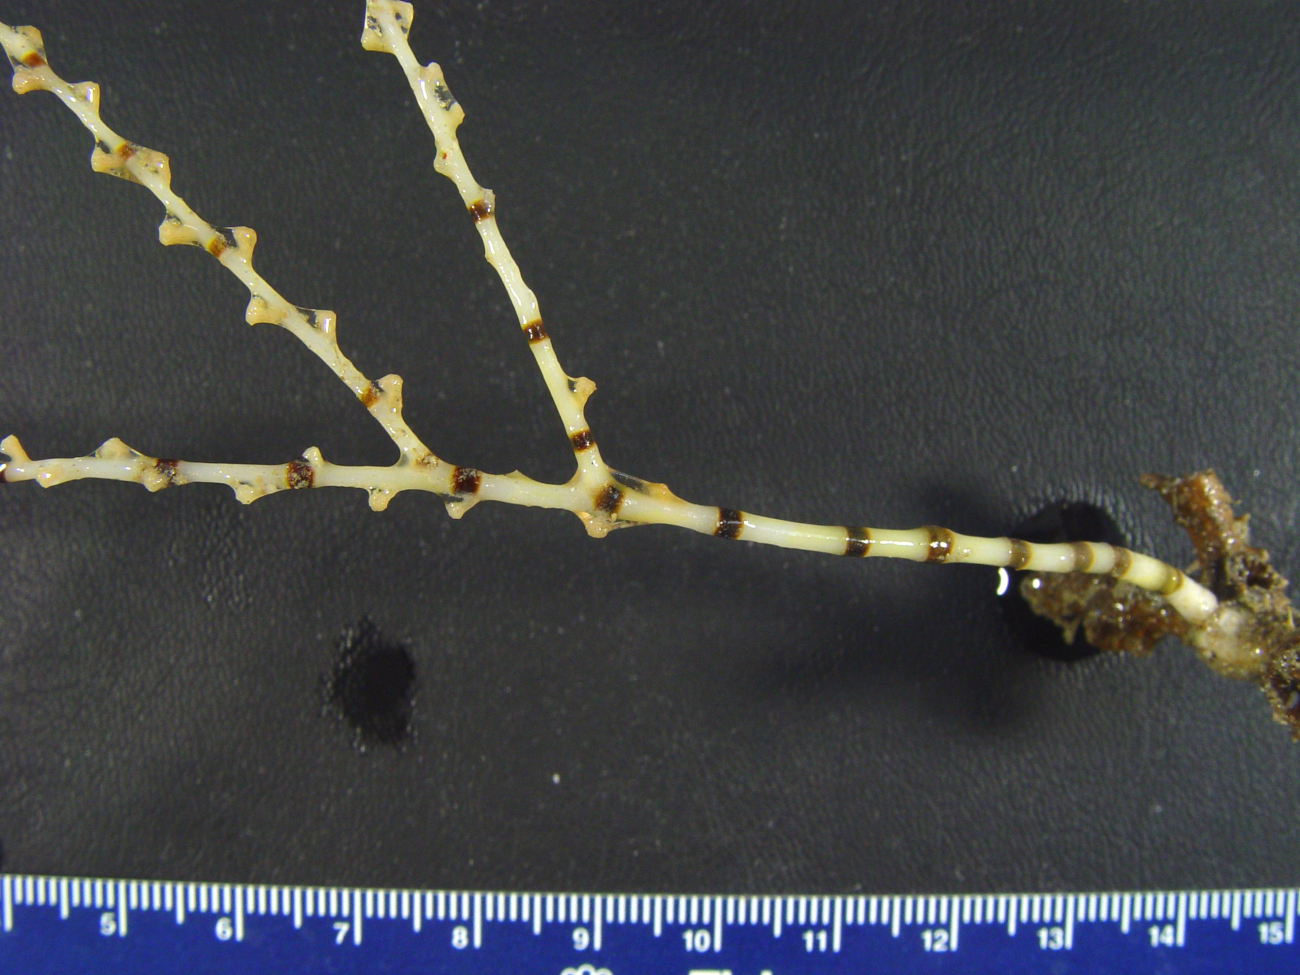 A Keratoisis bamboo coral